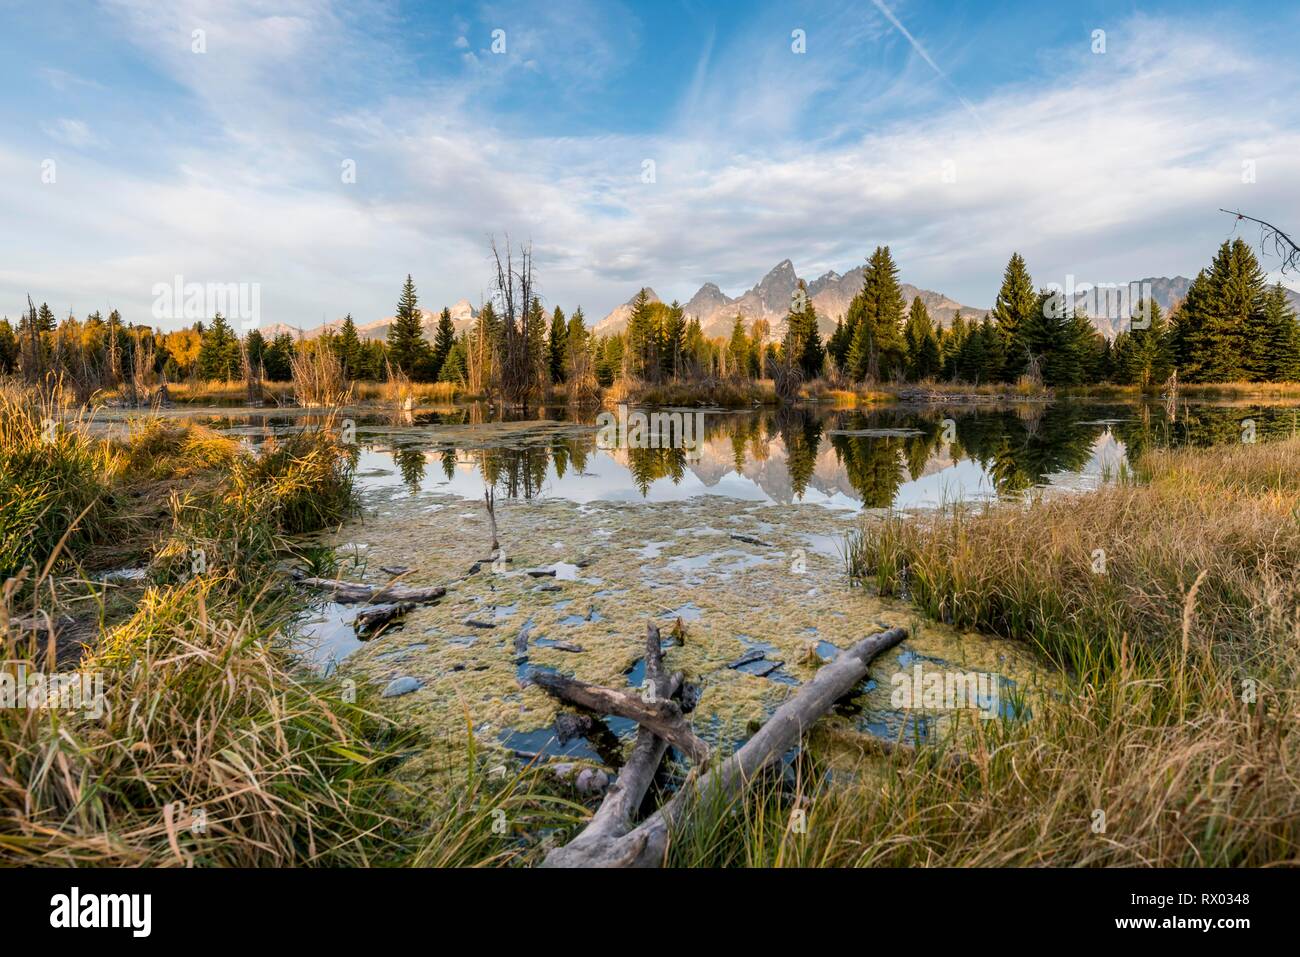 Plage de Grand Teton mountain range, reflet dans le lac, l'automne, la végétation, l'atterrissage Schwabacher Le Grand Teton National Park Banque D'Images